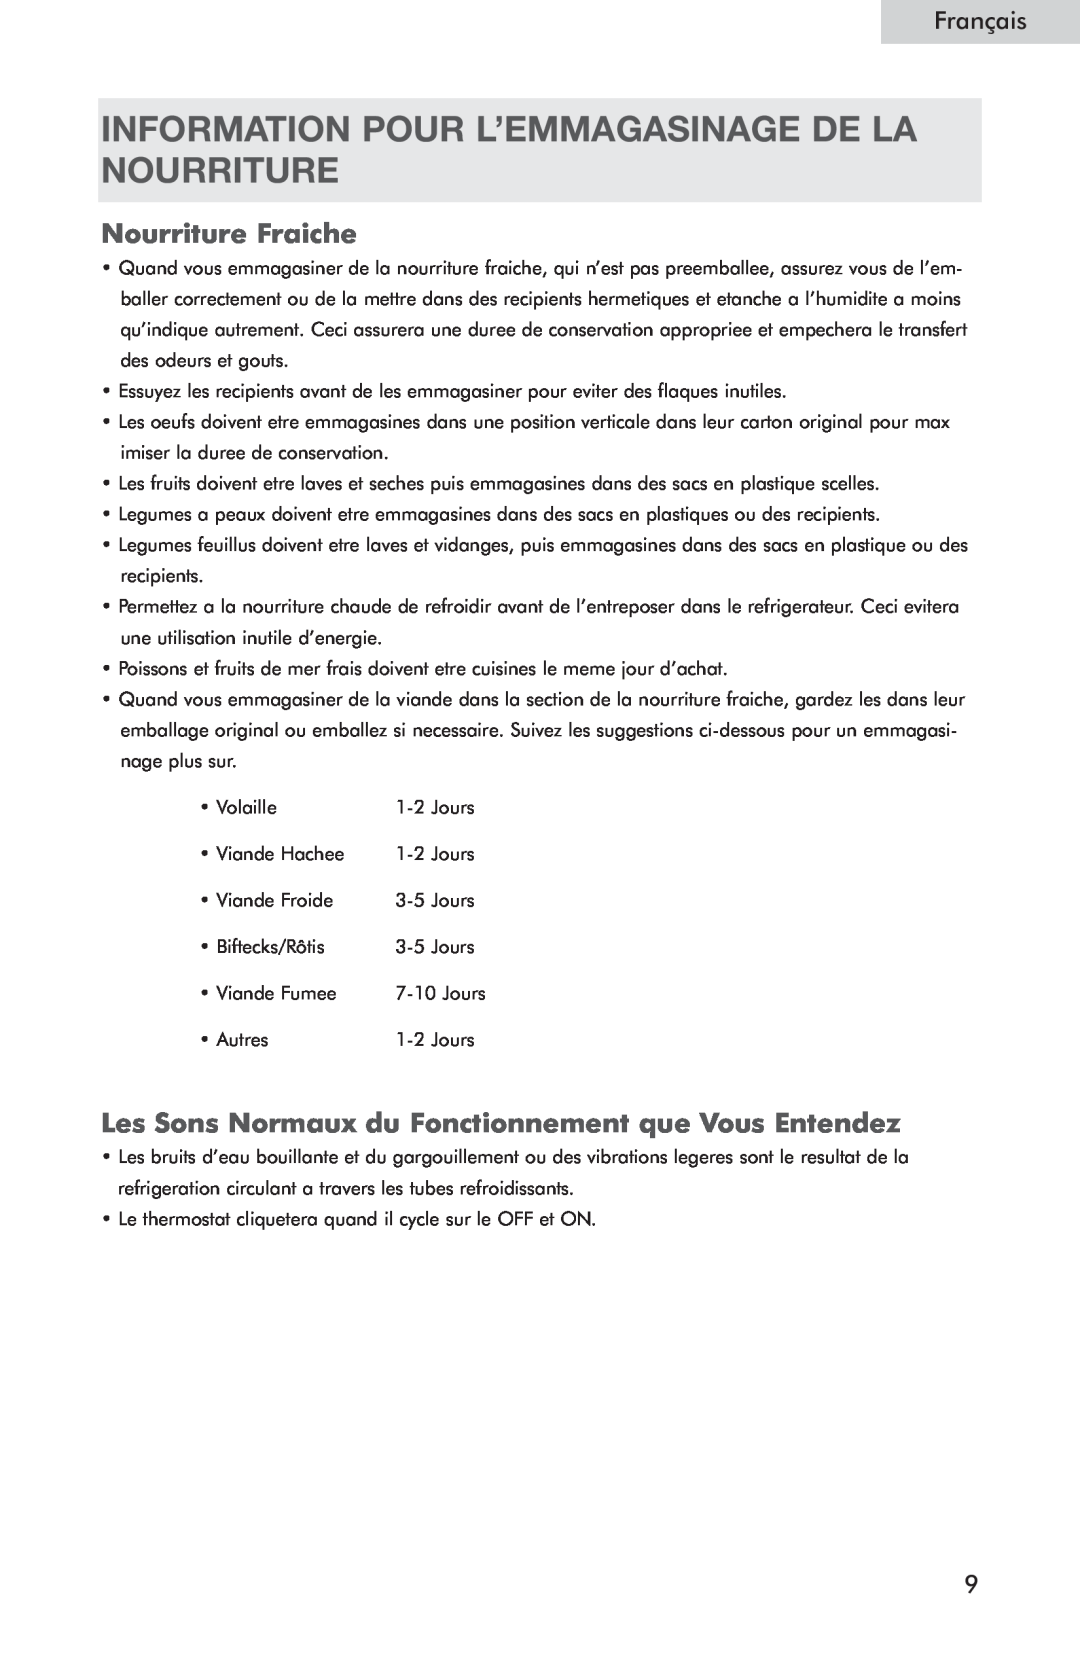 Haier HSP05WNC user manual Information Pour L’Emmagasinage De La Nourriture, Nourriture Fraiche, Français 